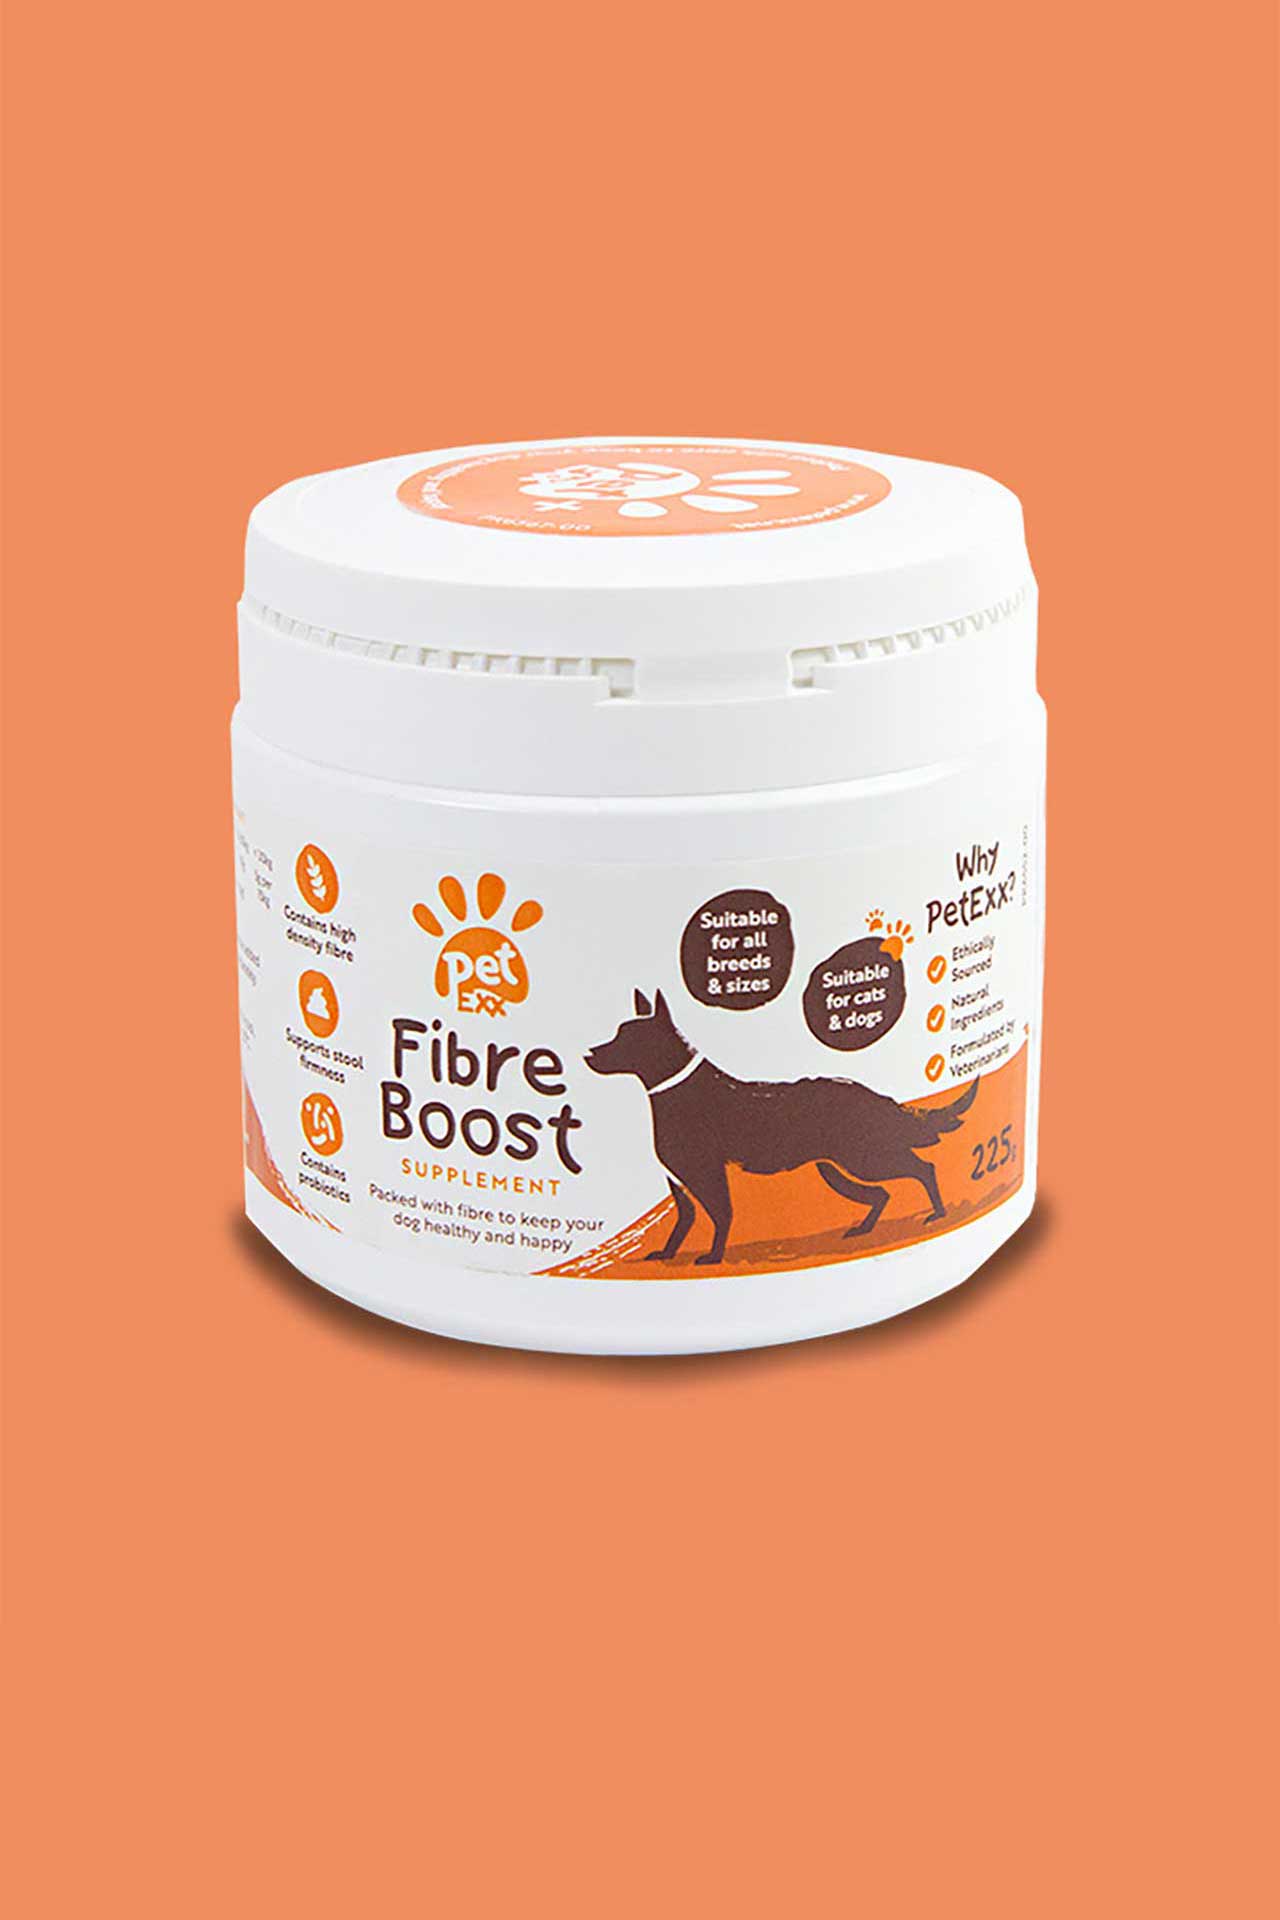 Fibre and probiotic supplement Oat Bran Dog Prebiotic